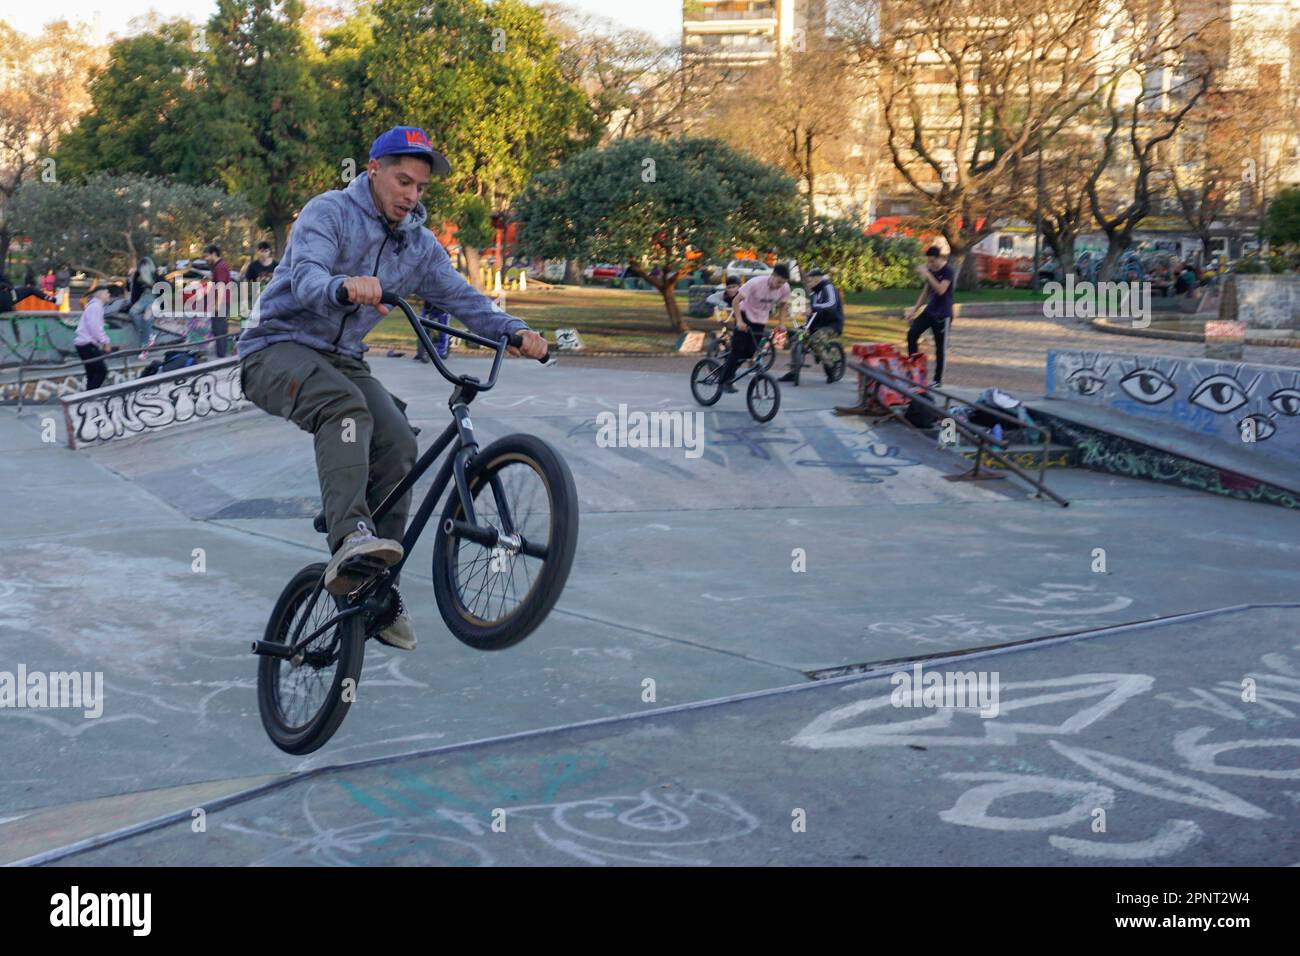 Fernando Nuñez dreht sich in der Luft auf seinem BMX-Fahrrad im Parque Centenario, Buenos Aires, Argentinien. Nuñez, der seit 10 Jahren BMX-Tricks praktiziert und vorführt, sagt, dass sich die Fahrer im Park treffen, um Tipps auszutauschen und sich gegenseitig neue Fähigkeiten beizubringen. (Lucila Pellettieri/Global Press Journal) Stockfoto